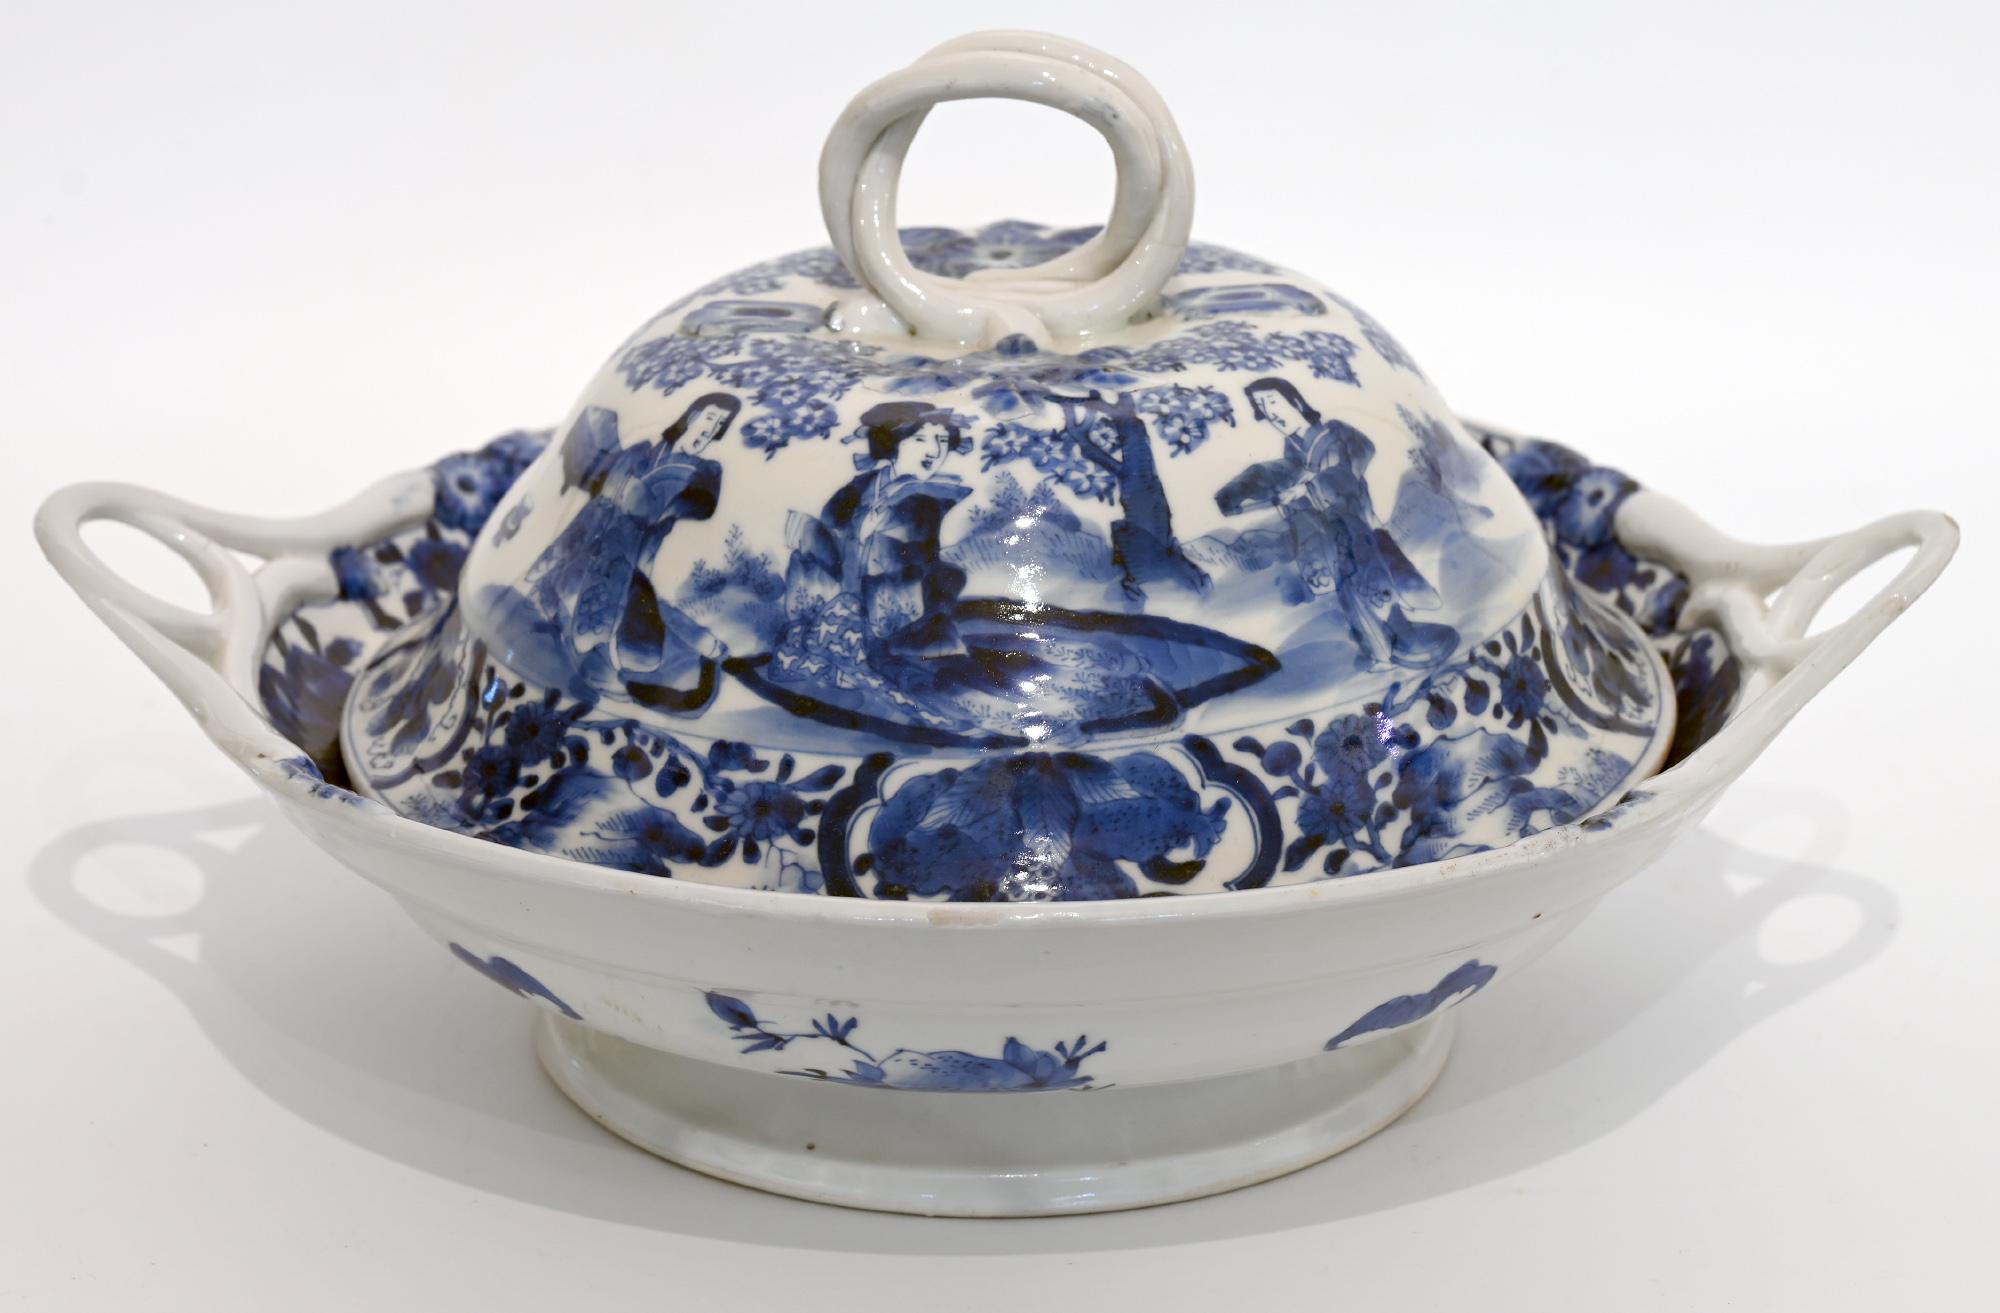 Ein ungewöhnlicher und sehr dekorativer Satz von 19 Tellern, Platten und Deckeltellern in Blau und Weiß;
China, 18. Jahrhundert
Kann sehr gut mit weißem Porzellan kombiniert werden, wie auf einem Foto zum Beispiel mit weißen Tellern von Meissen